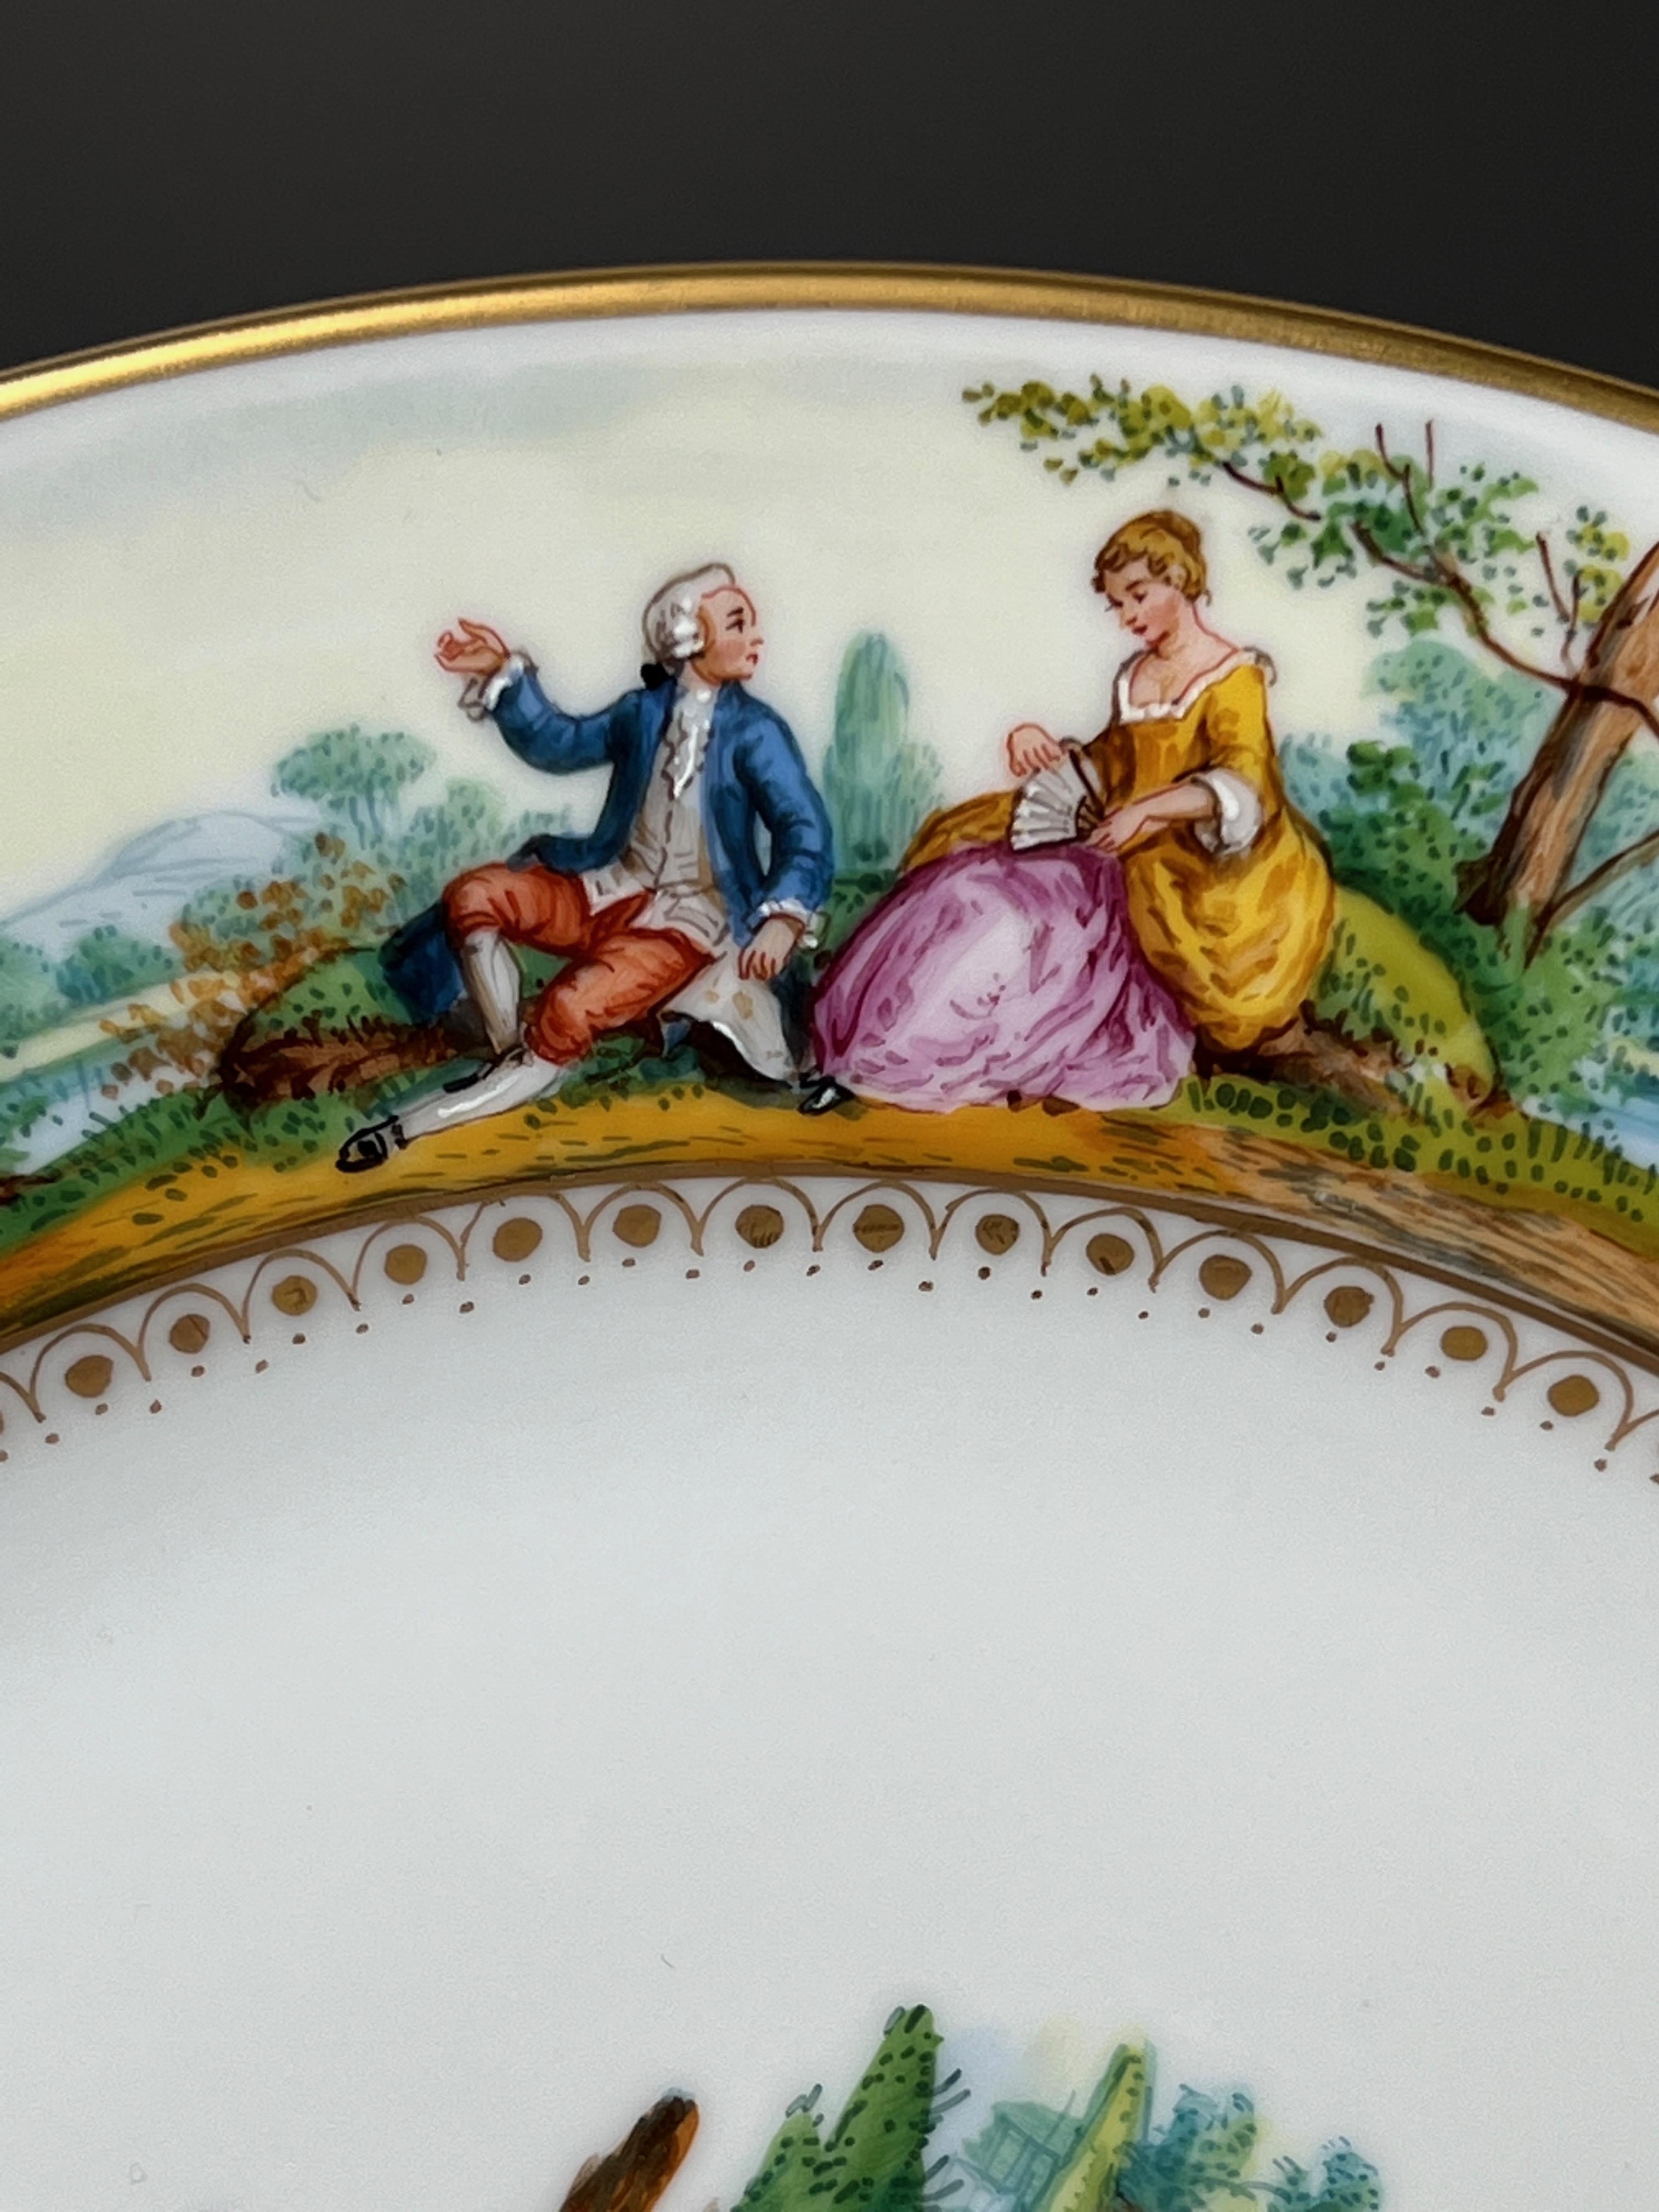 Il s'agit d'un ensemble de 12 assiettes à dîner Dresde peintes à la main, représentant des scènes classiques de Watteau entourant les bordures avec des centres peints à la main de façon magistrale, chaque scène étant unique. Les sujets centraux sont